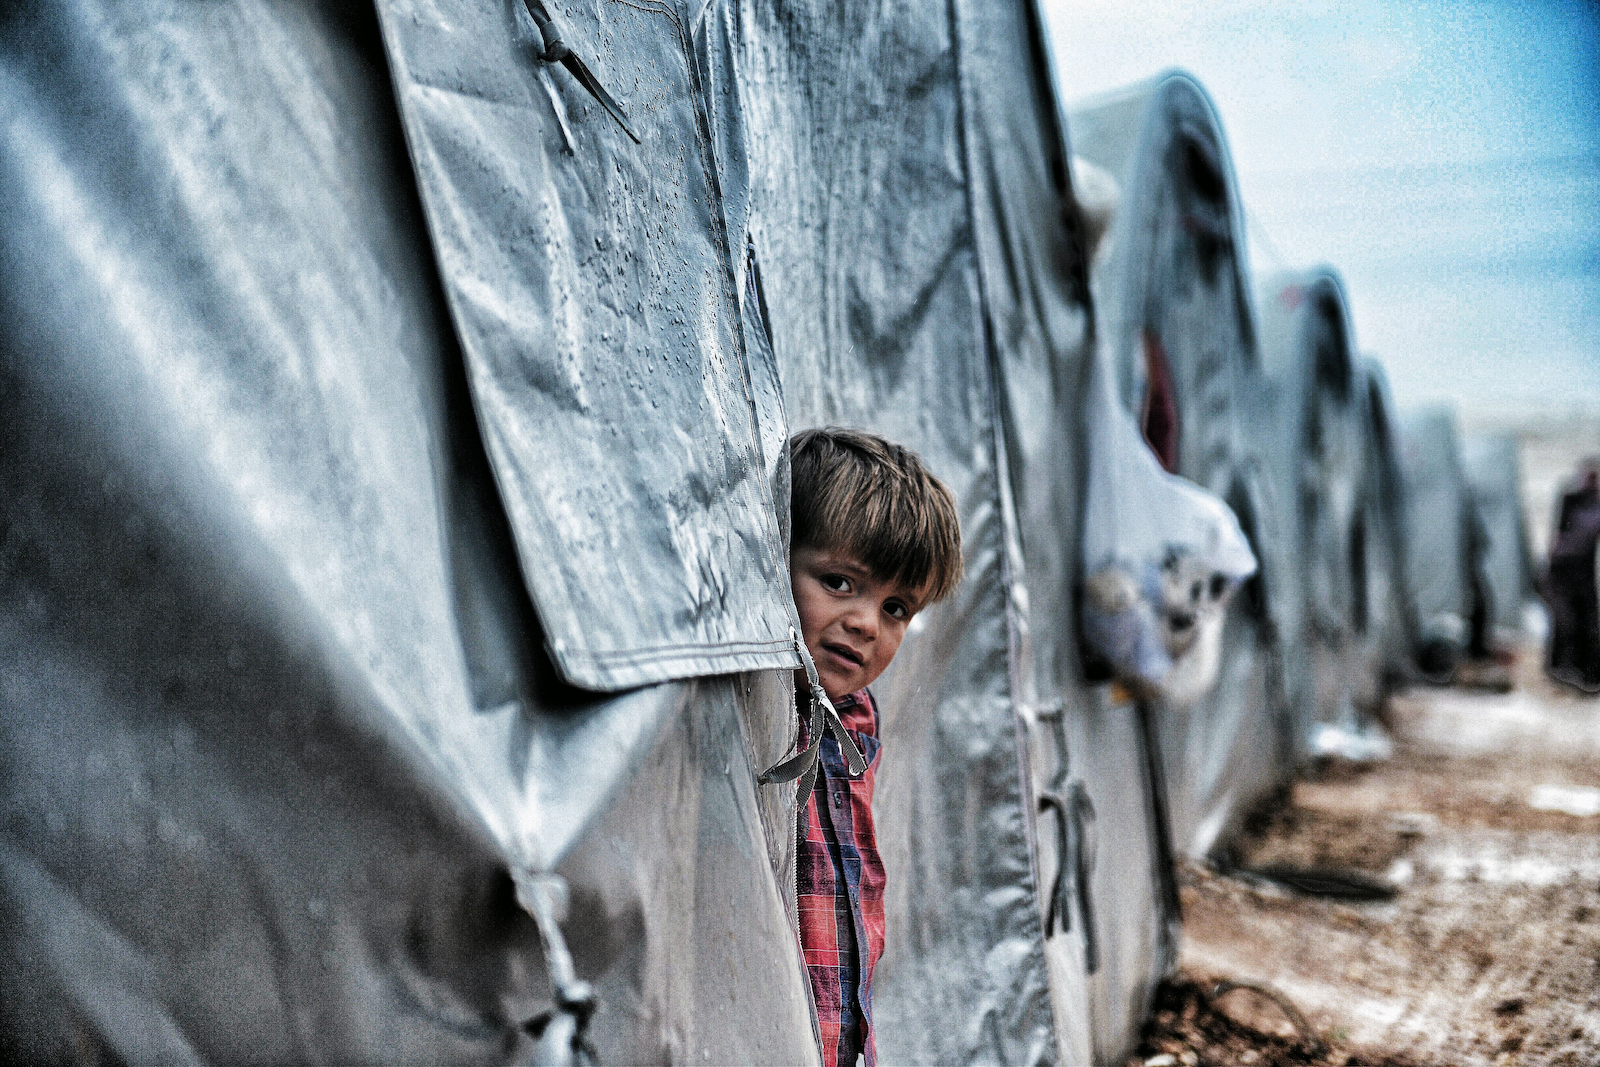 Syrian refugee child in a Turkish refugee camp